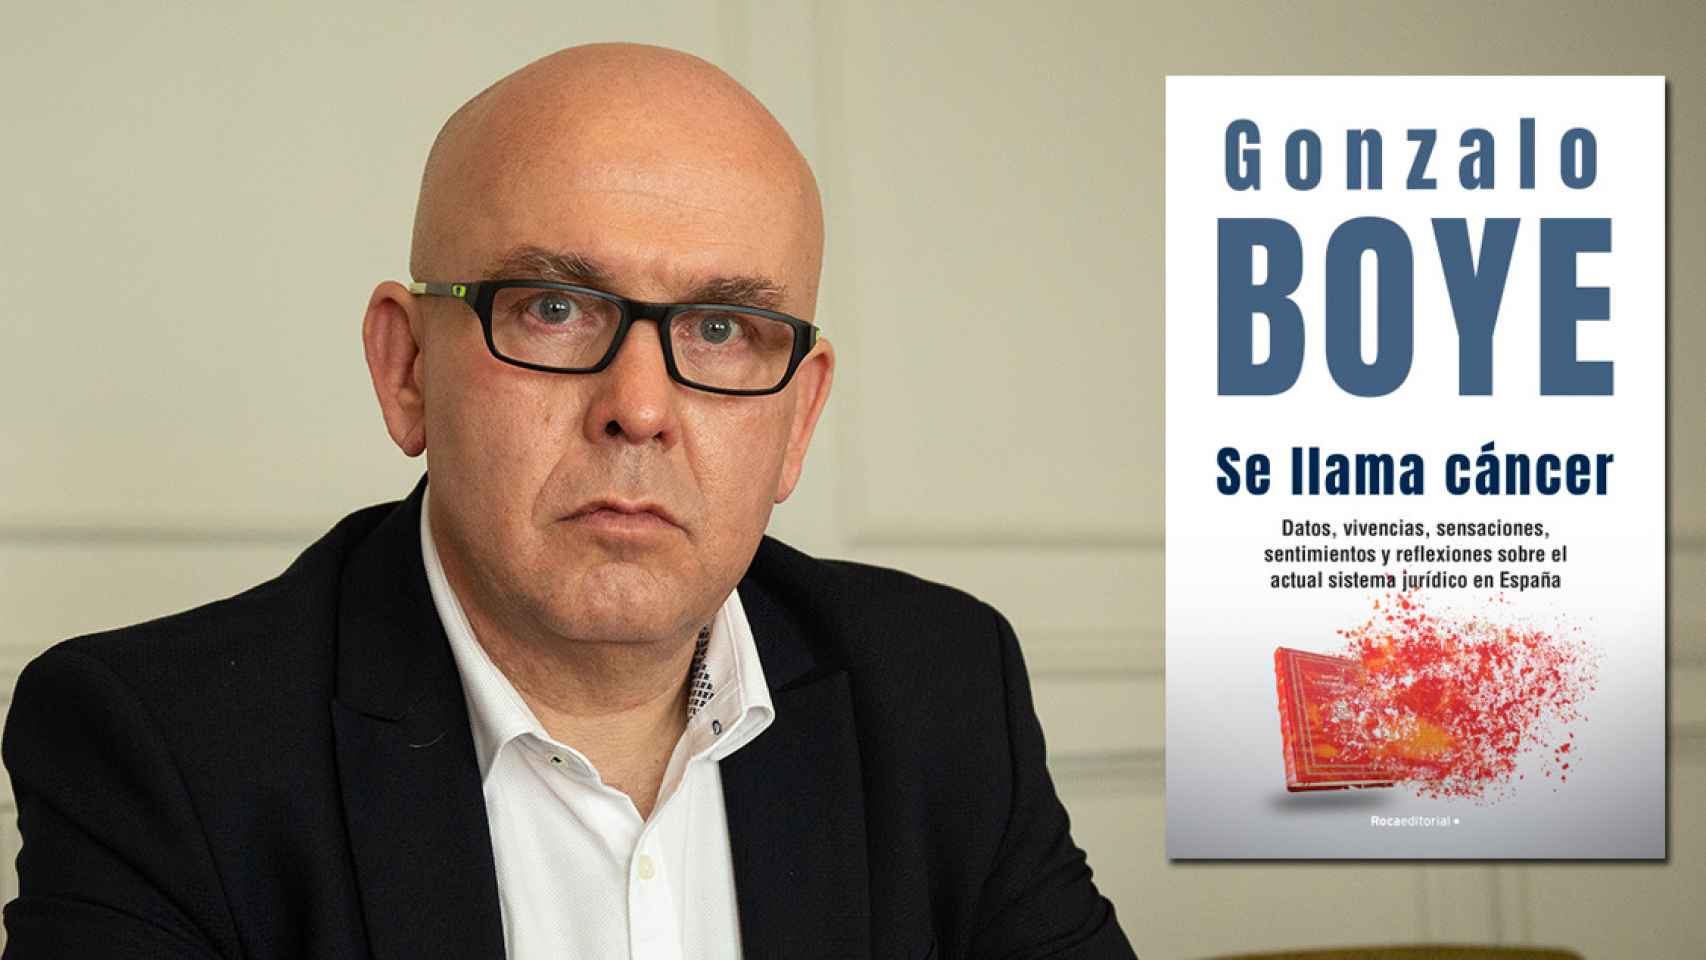 El abogado Gonzalo Boye y su cuarto libro, 'Se llama cáncer'